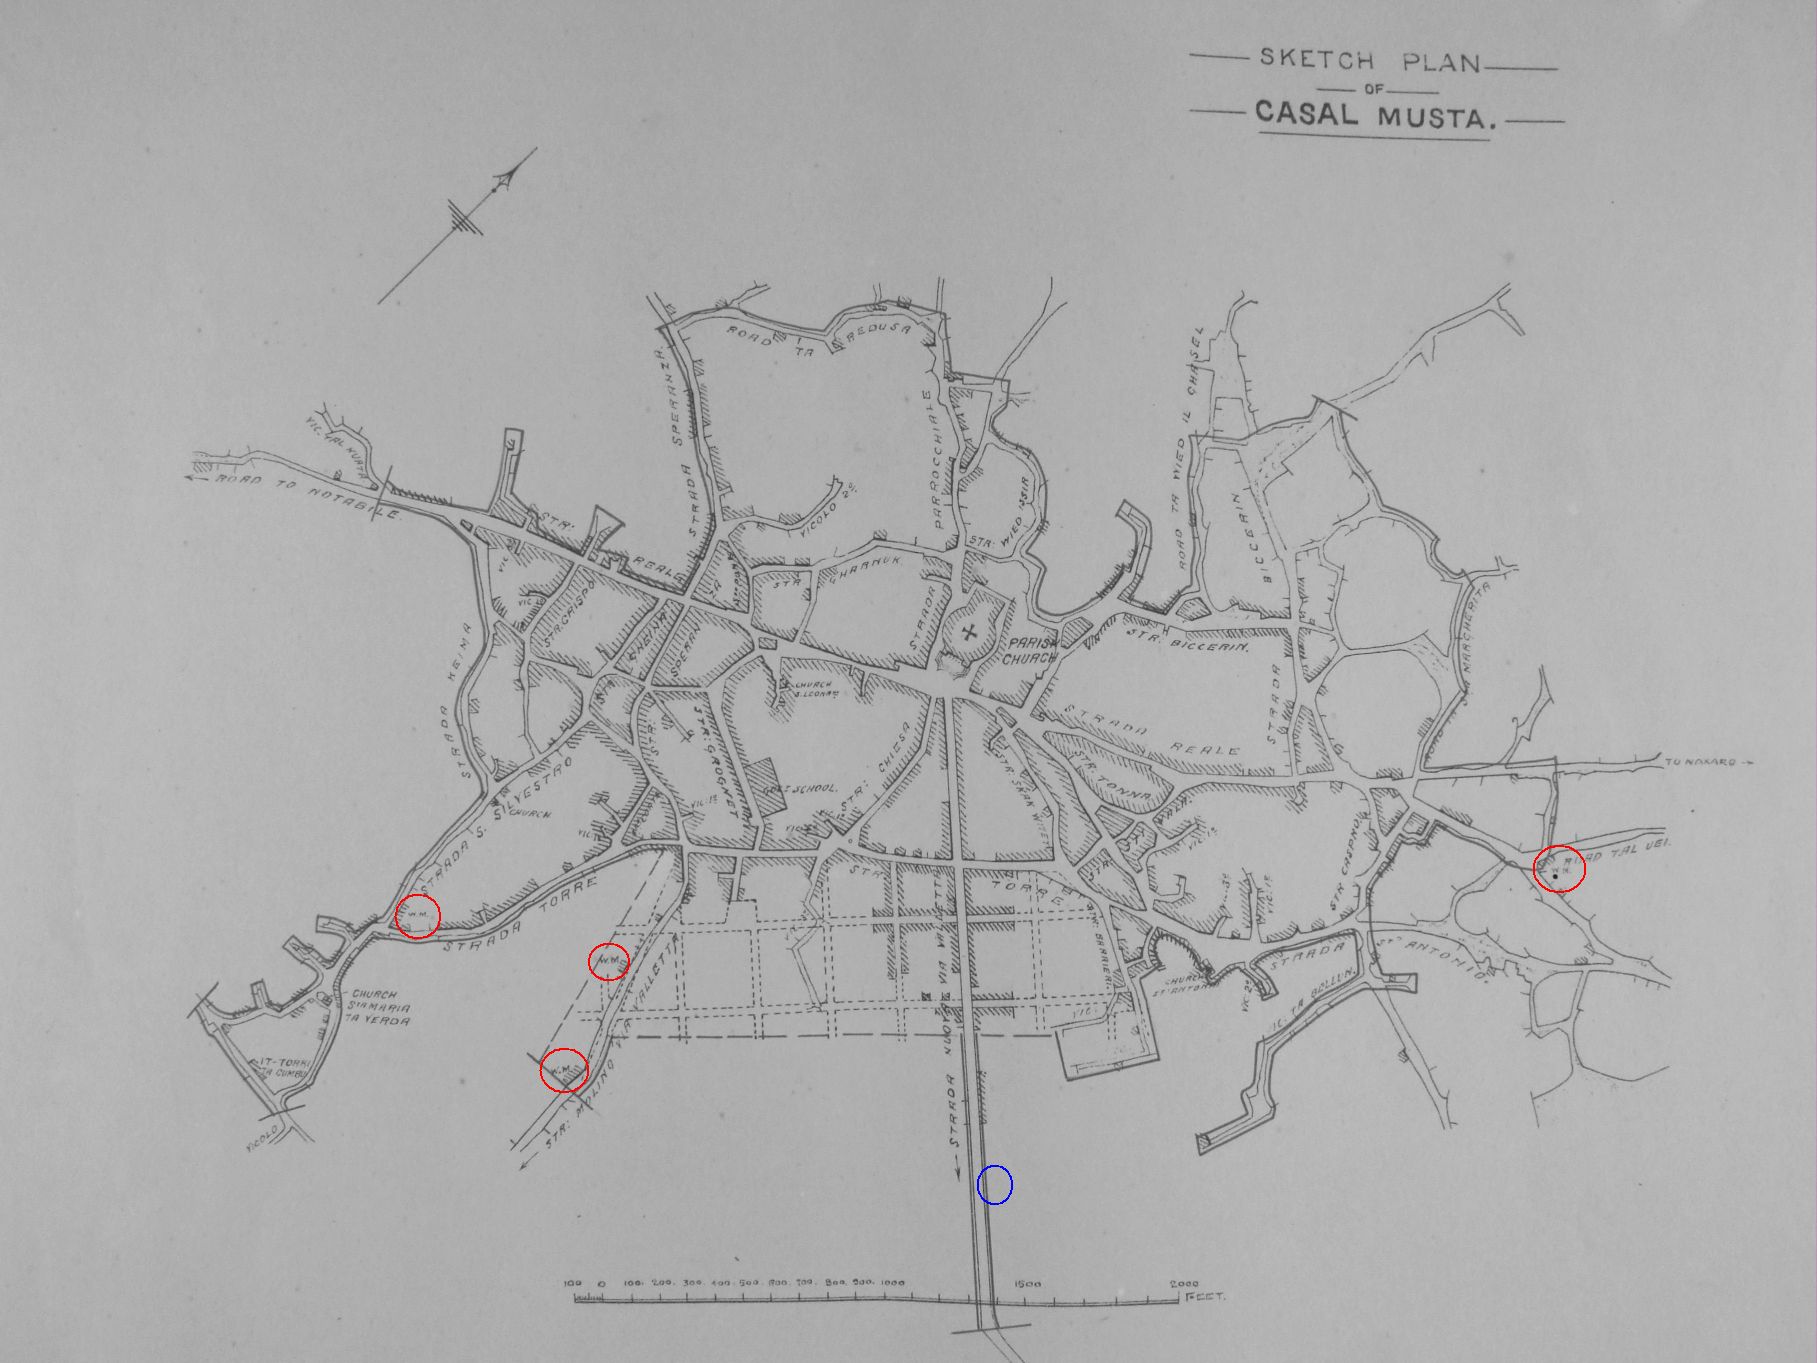 Mappa tal-Mosta tal-1824 turi l-mithna l-Qadima